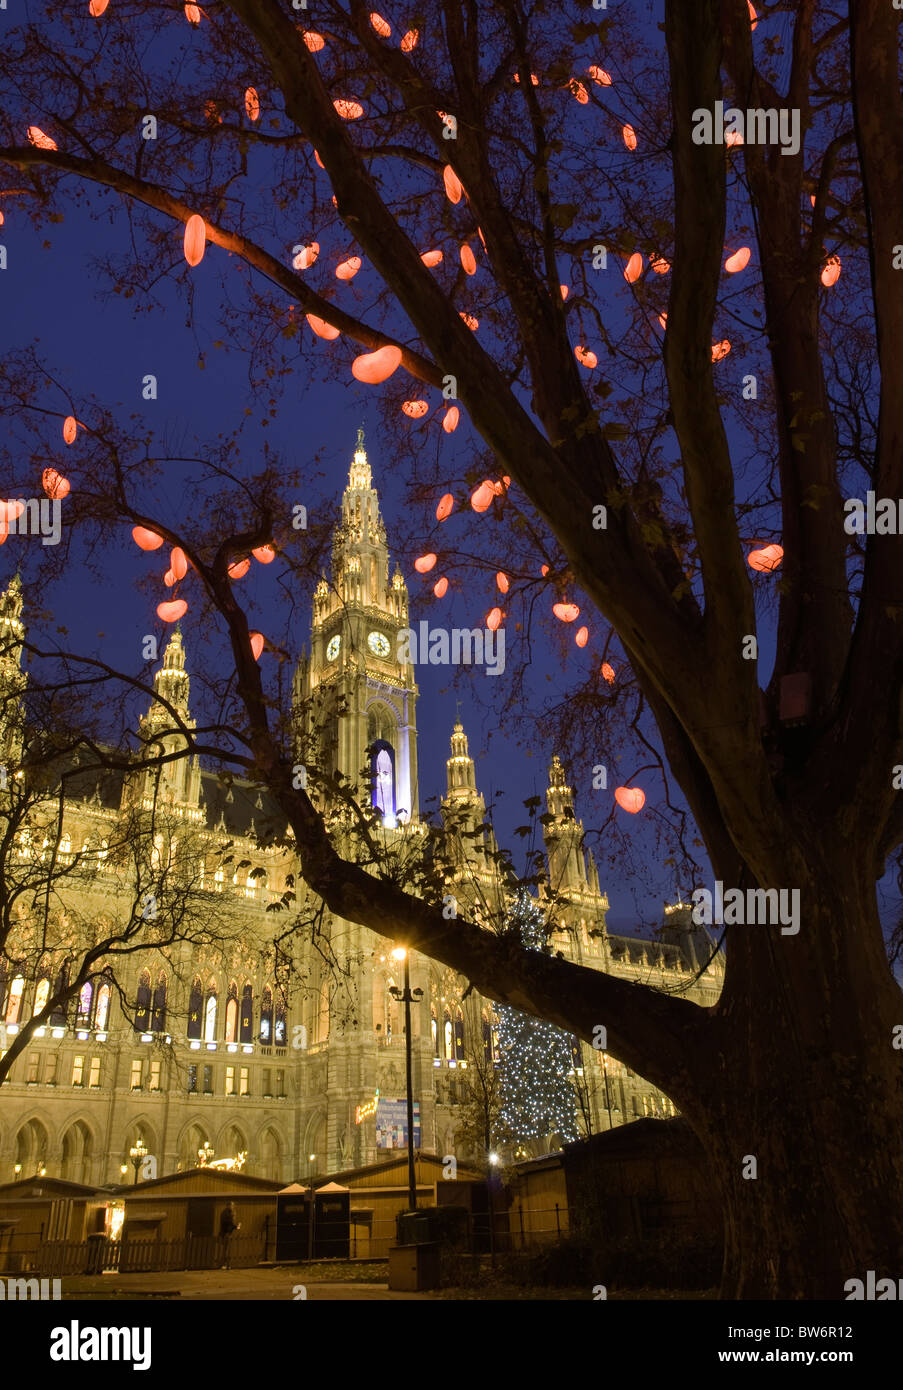 Die Bäume, die das beleuchtete Rathaus Rathausplatz, Vienna umgeben sind während der Weihnachtszeit geschmückt. Stockfoto